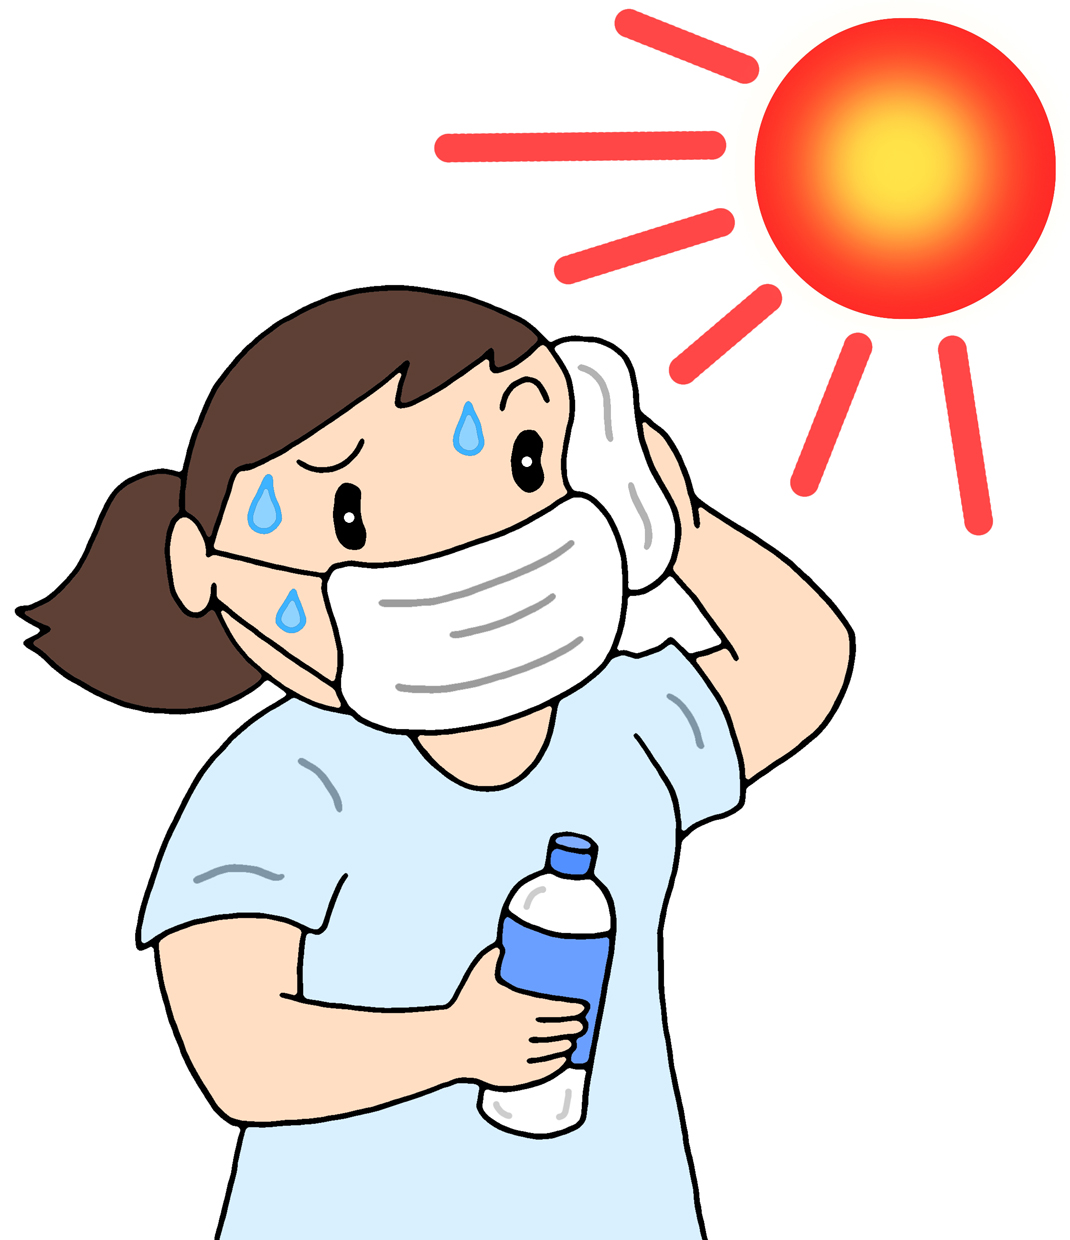 病気,疾患,疾病,病,熱中症,日射病,脱水症,脱水症状,酷暑,猛暑,日差し,直射日光,発汗,水分補給,塩分補給,熱中症対策